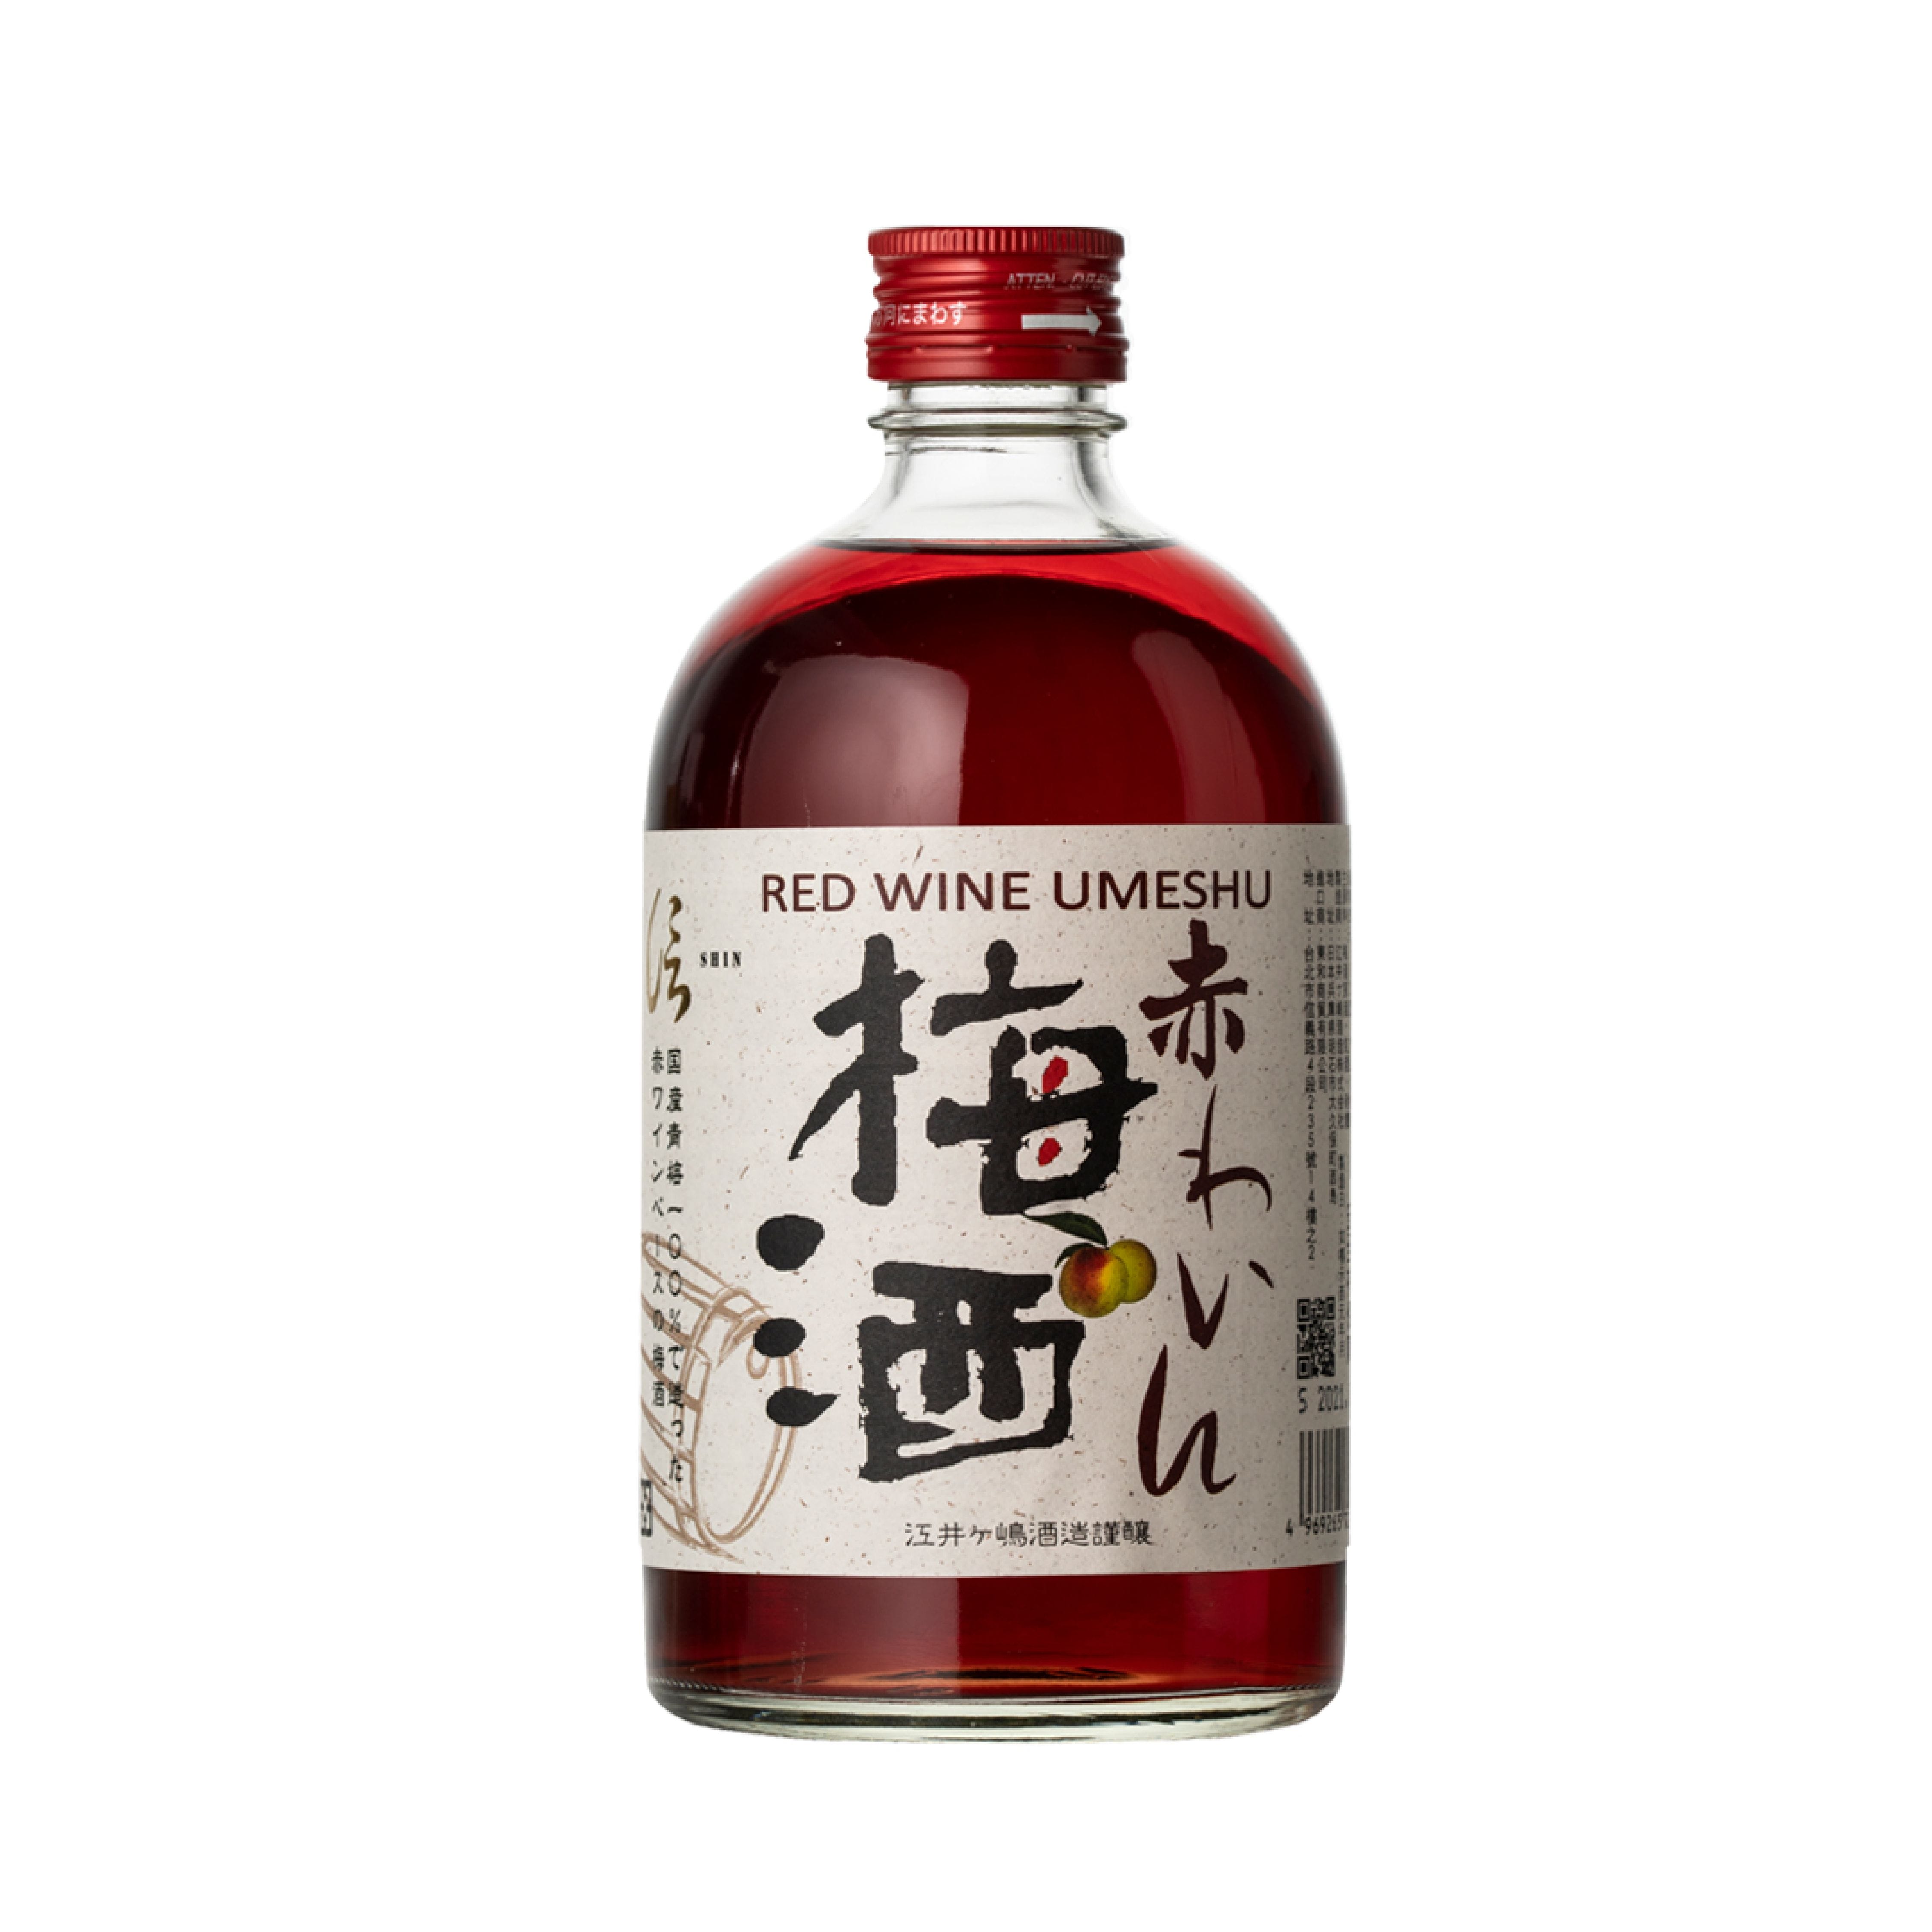 Shin Red Wine Umeshu 500ml 01